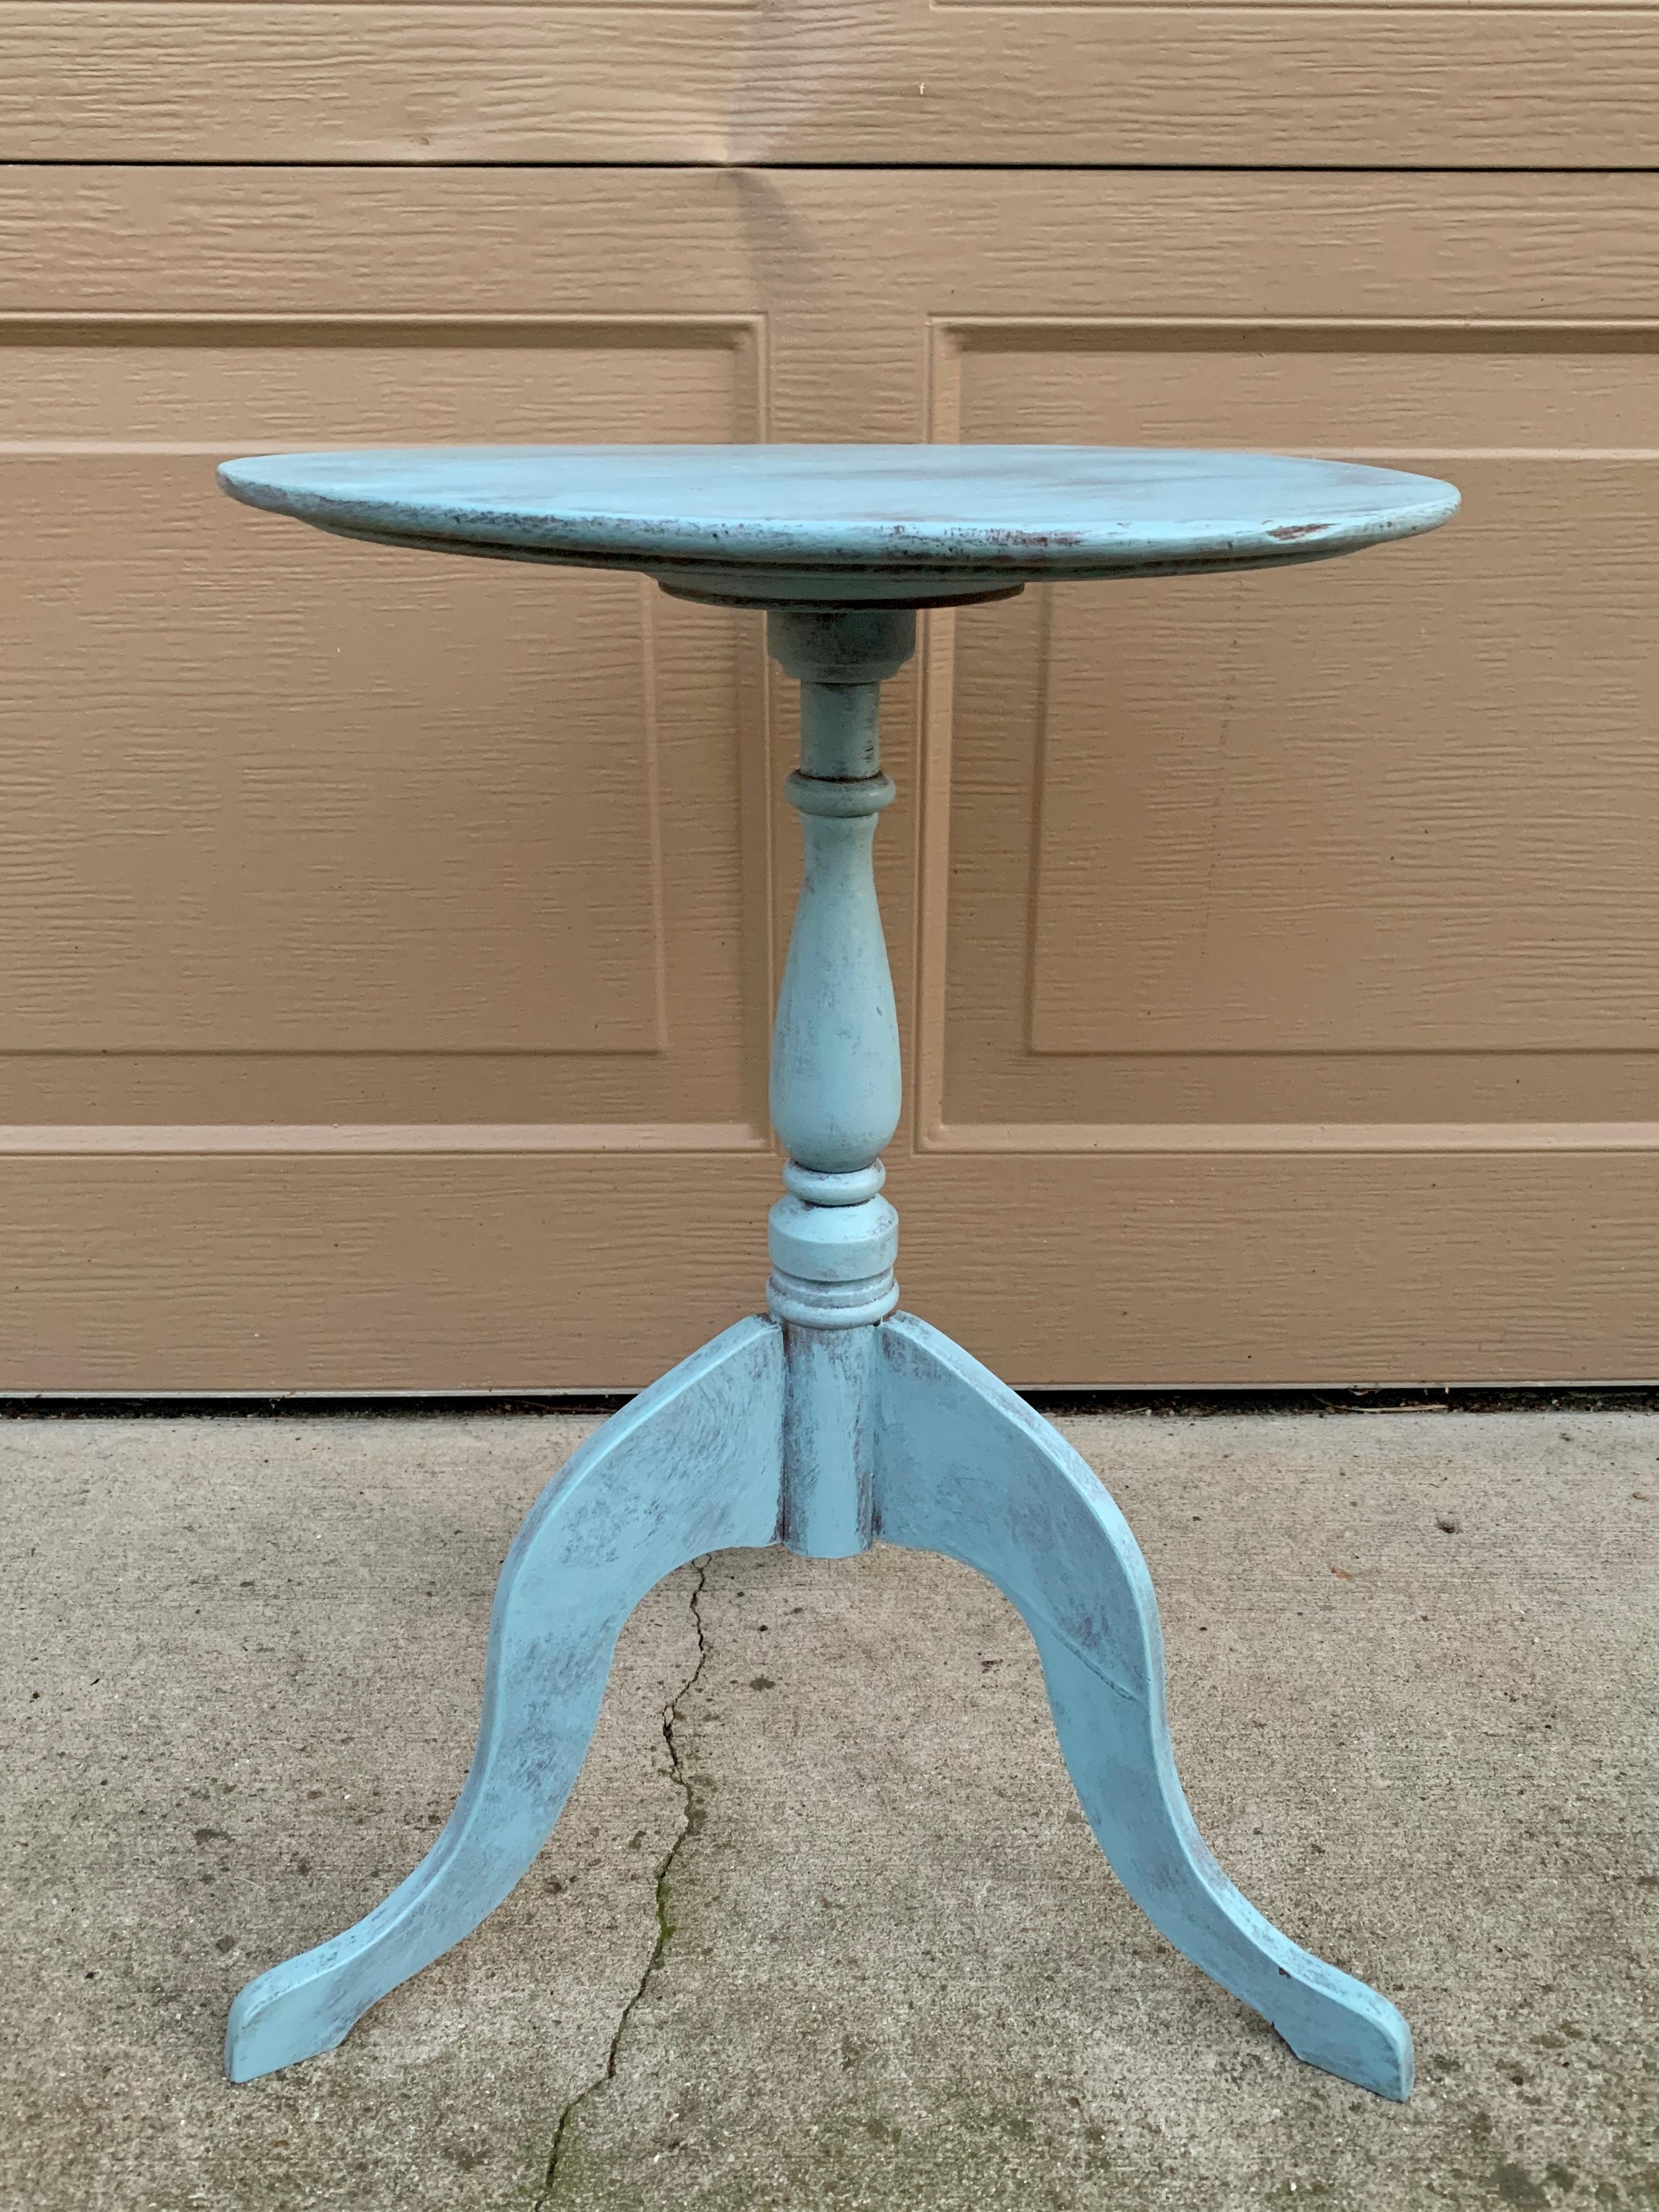 Magnifique table d'appoint ronde de style Régence sur trois pieds

États-Unis d'Amérique, début du 20e siècle

Noyer peint dans une belle couleur bleue vieillie.

Dimensions : 14 